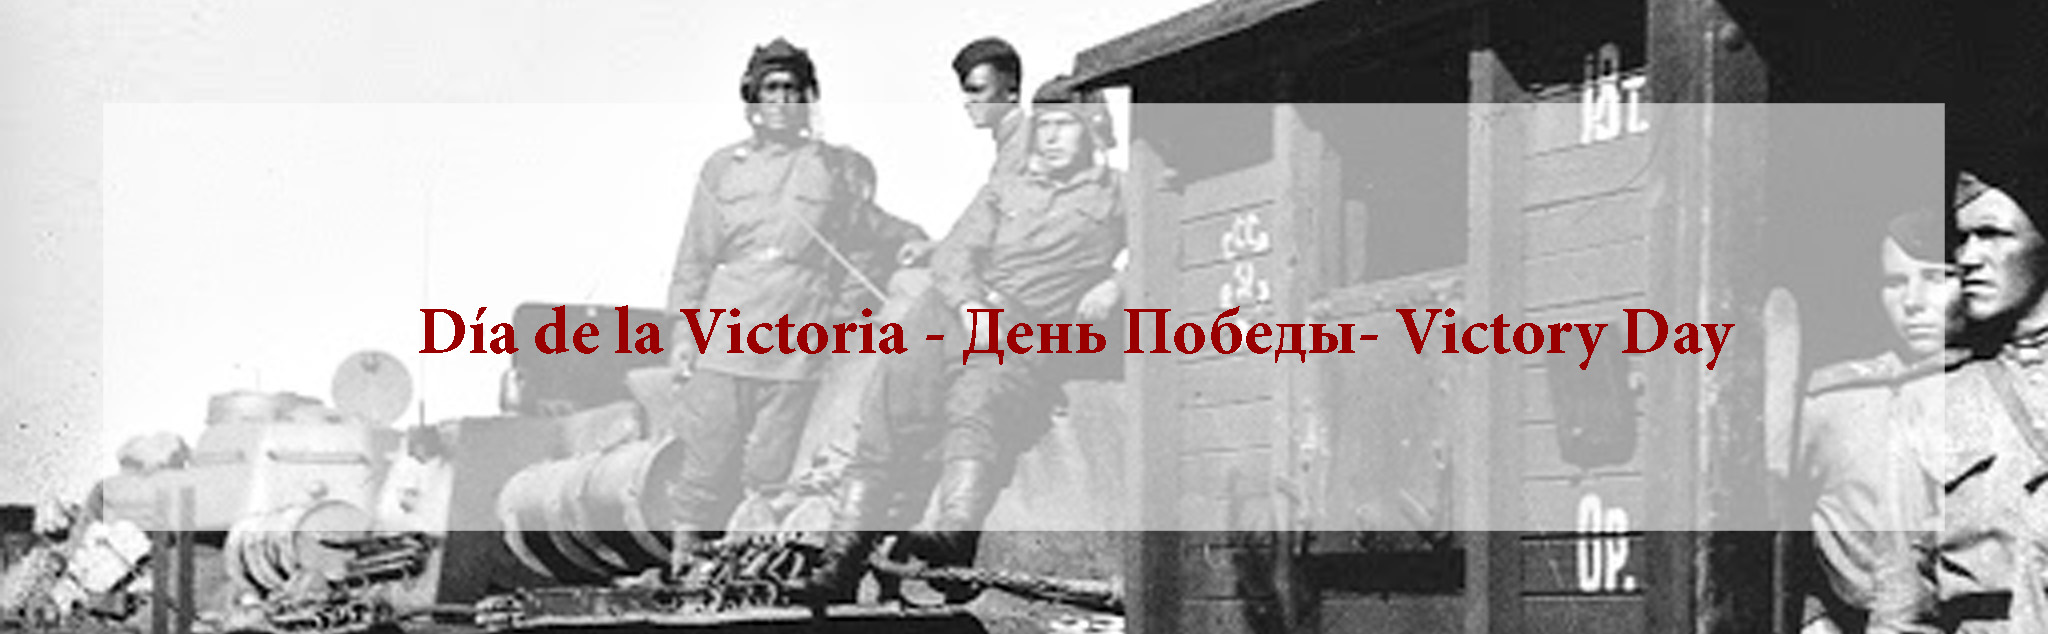 Día de la Victoria - День Победы- Victory Day